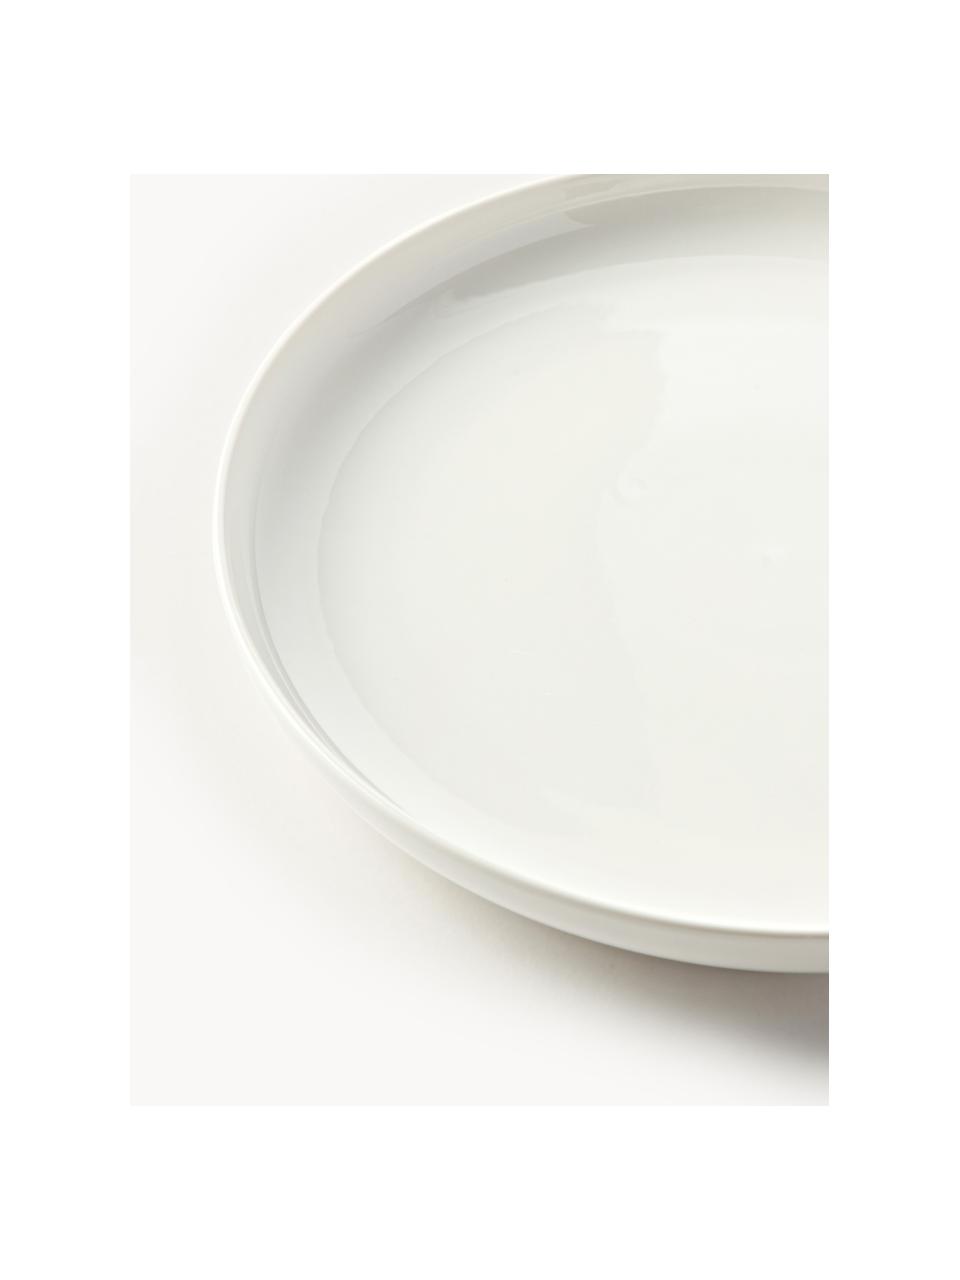 Assiettes plates en porcelaine Nessa, 2 pièces, Porcelaine de haute qualité, Blanc cassé, haute brillance, Ø 26 cm